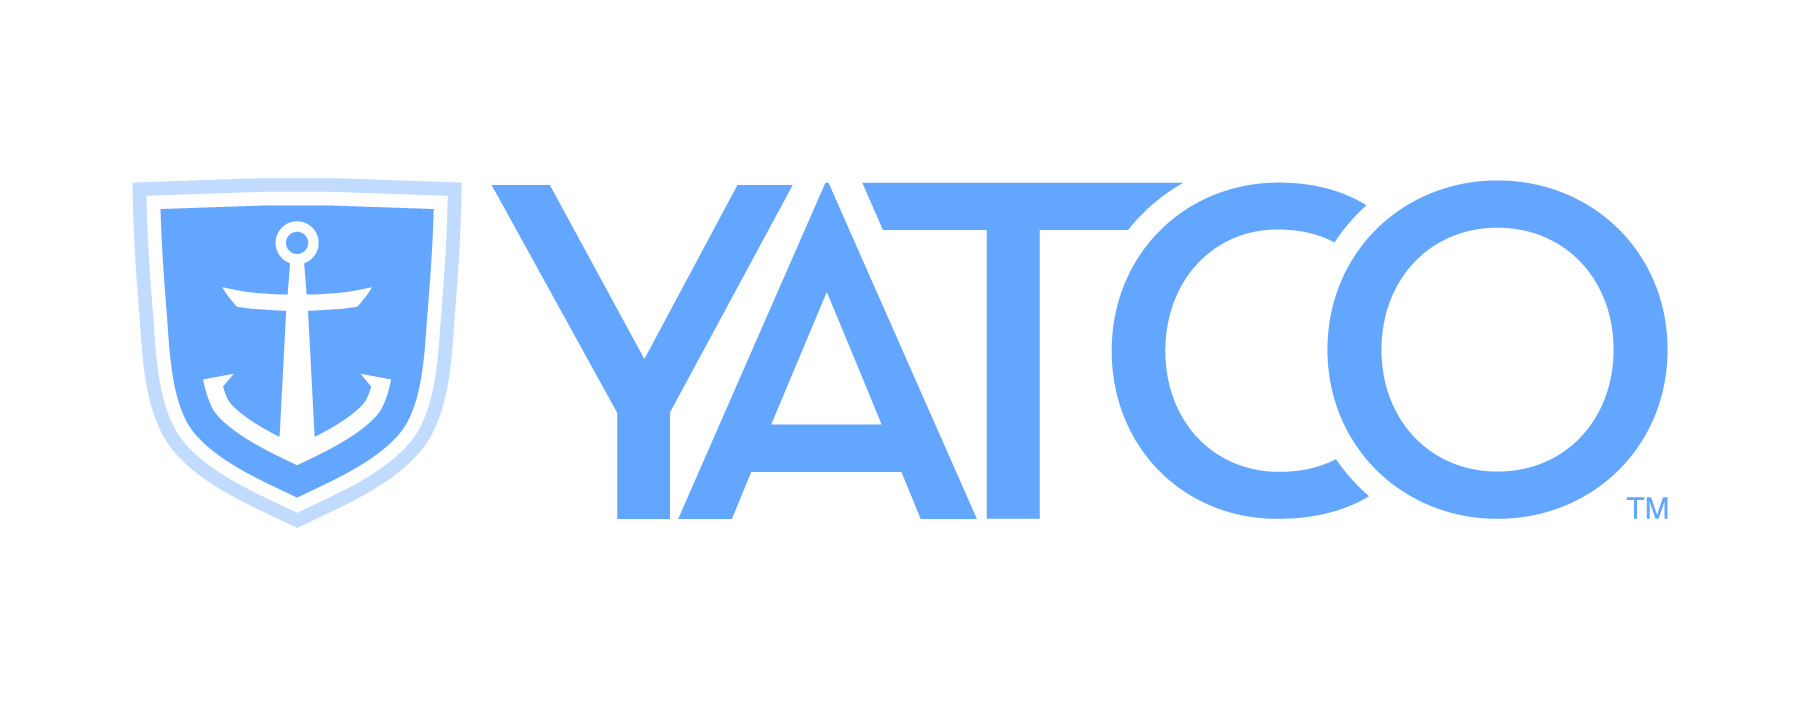 Savannah Yacht Center logo